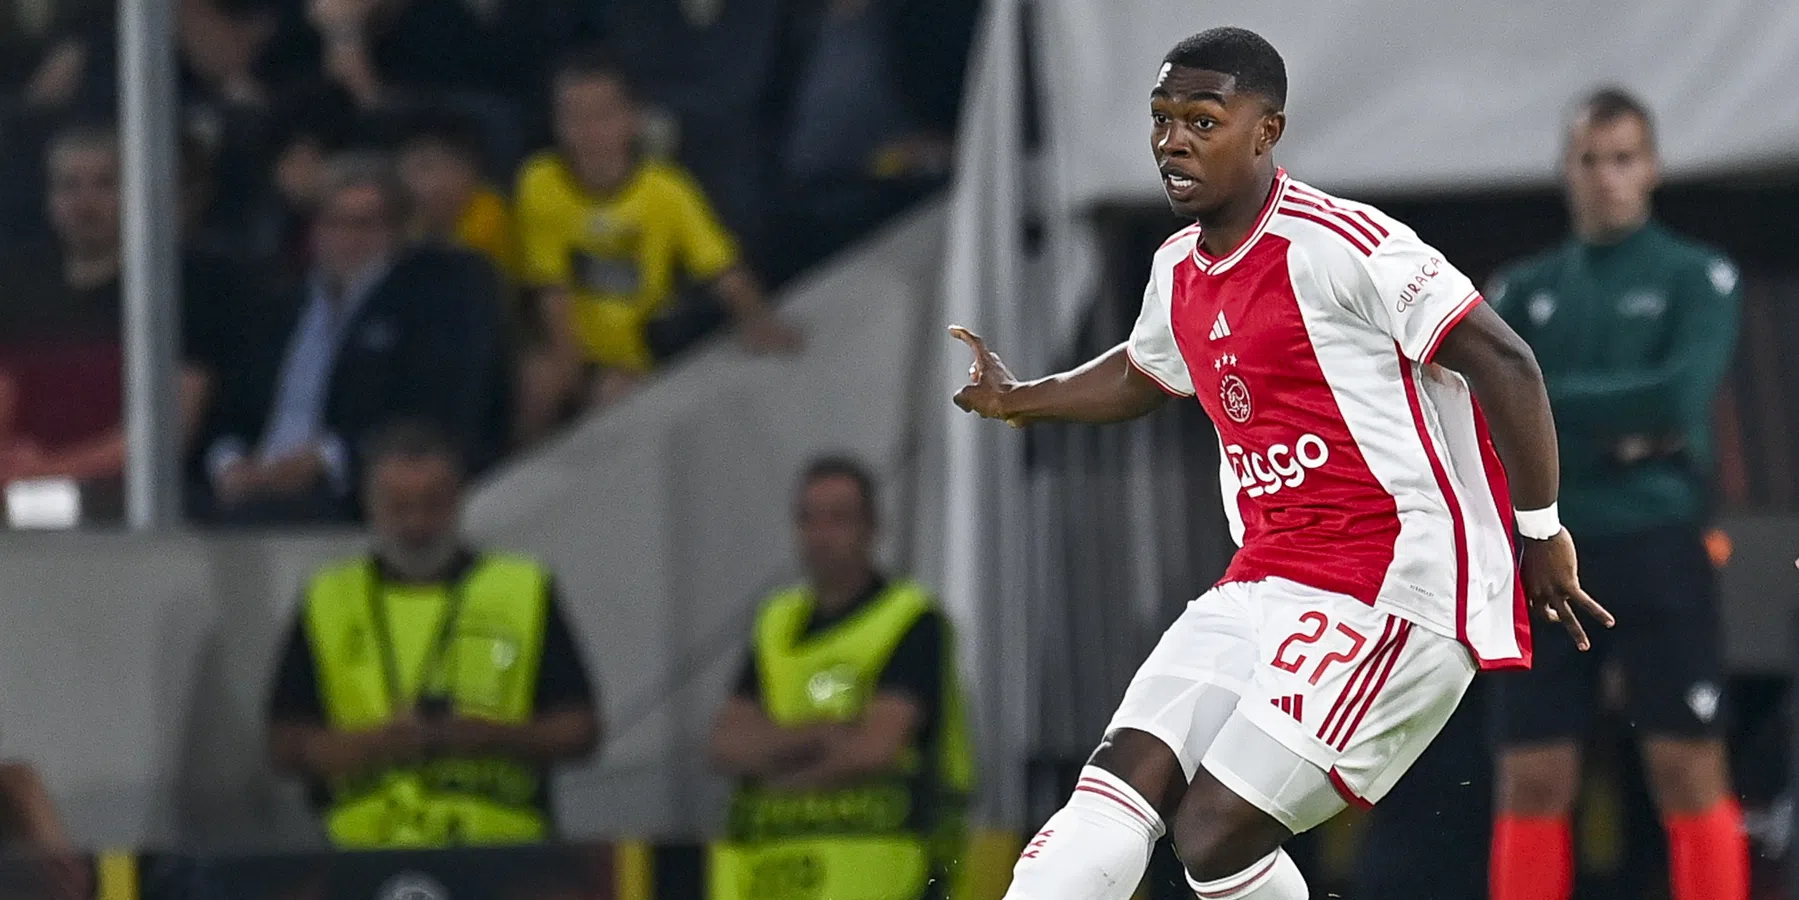 'Godts maakt goede indruk en is verder dan Van Axel Dongen bij Ajax'